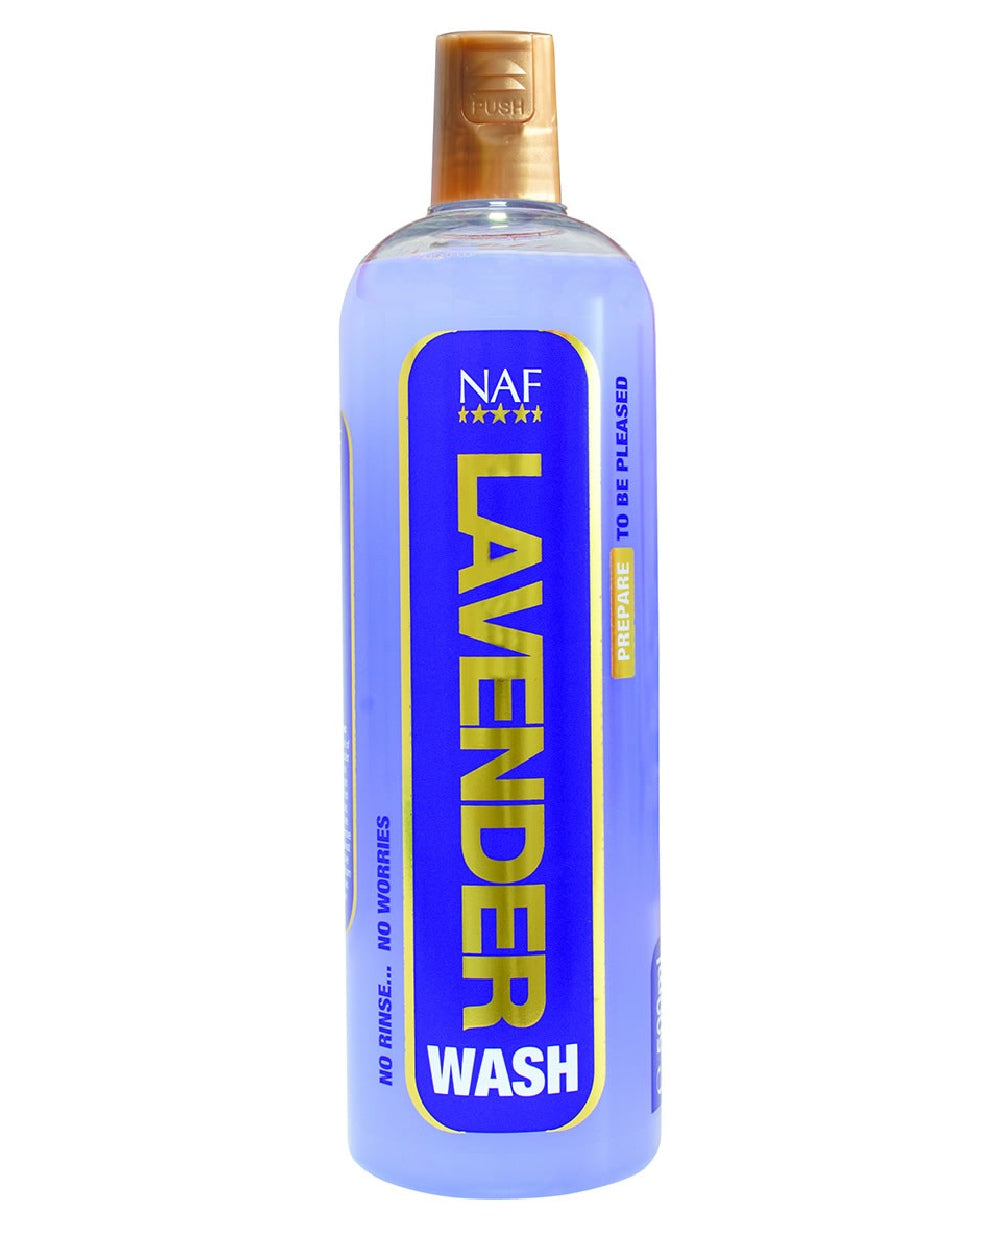 NAF Lavender Wash 500ML on white background